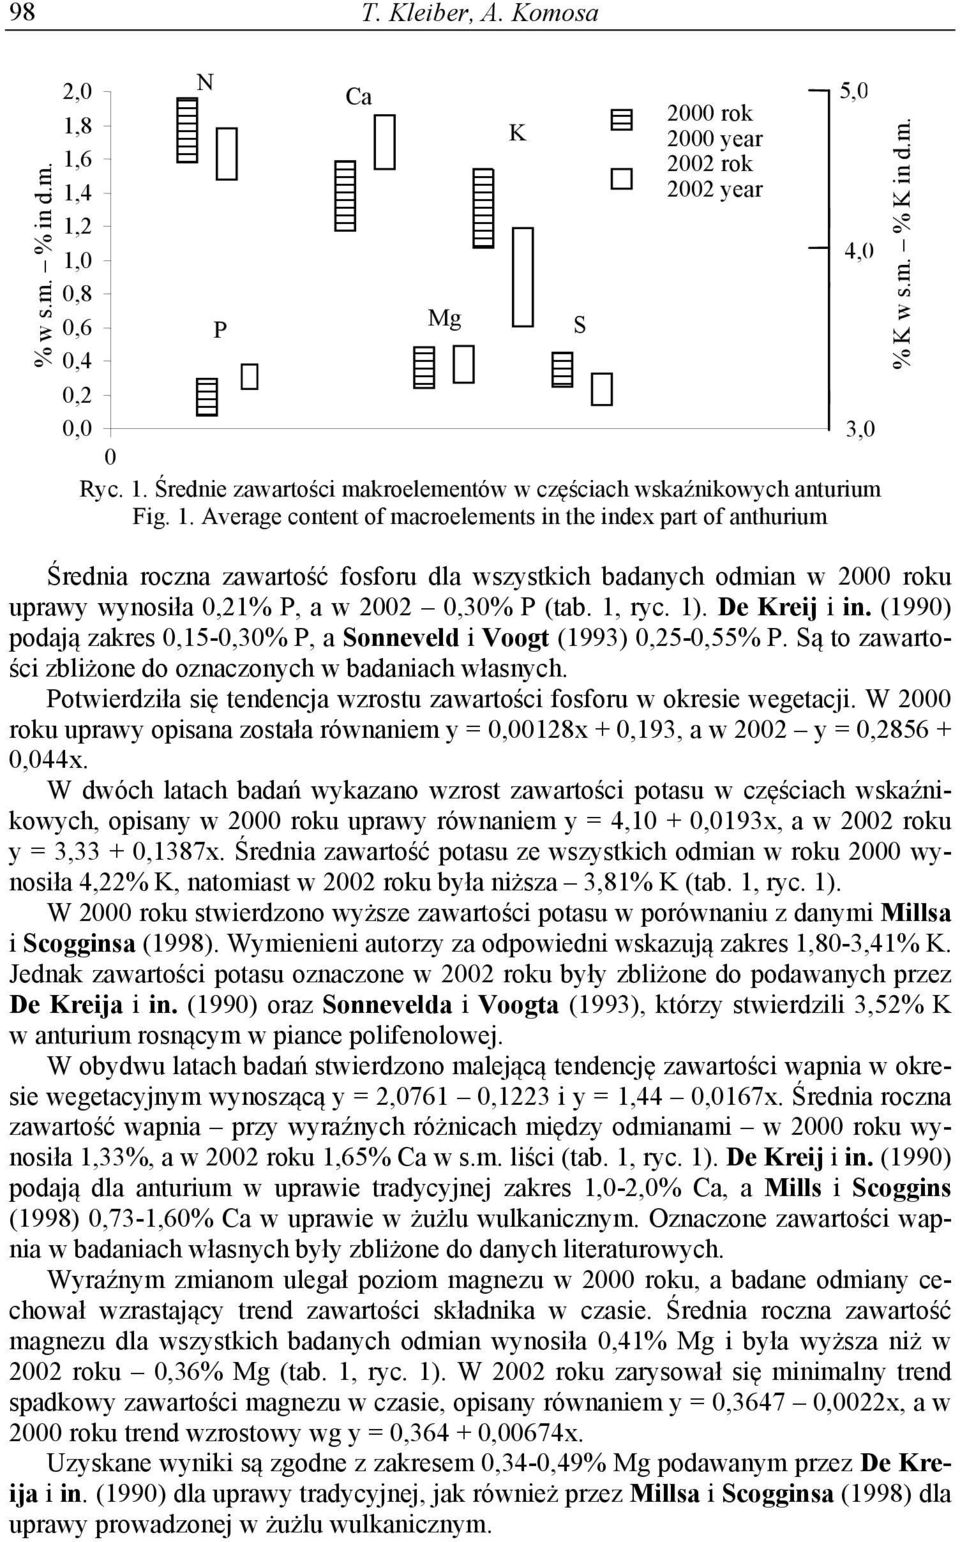 1). De Kreij i in. (1990) podają zakres 0,15-0,30% P, a Sonneveld i Voogt (1993) 0,25-0,55% P. Są to zawartości zbliżone do oznaczonych w badaniach własnych.